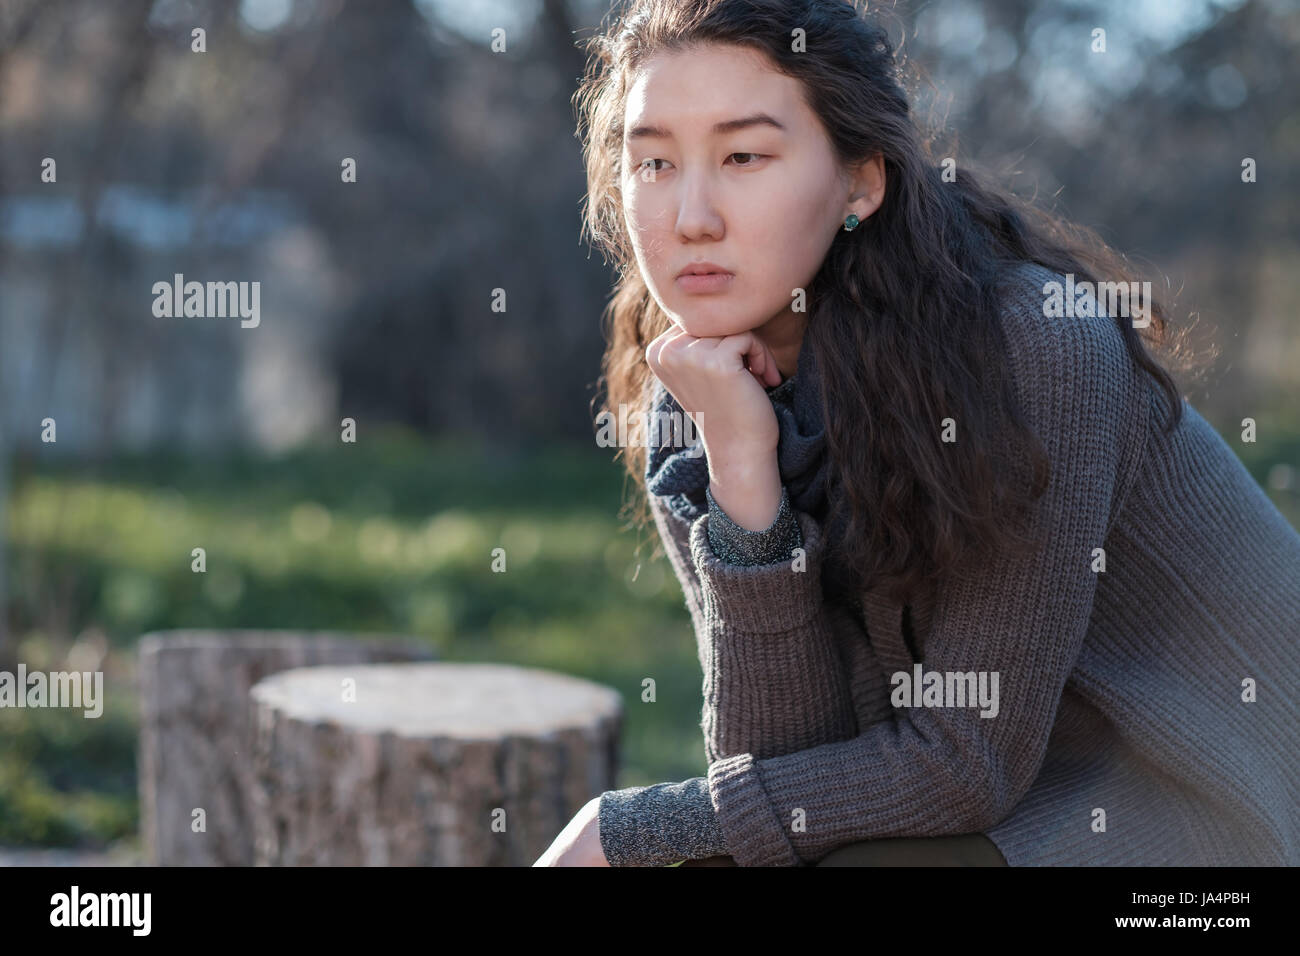 Ritratto di una ragazza asiatica in un parco. Ella si siede da solo e guarda tristemente lontano. Foto Stock